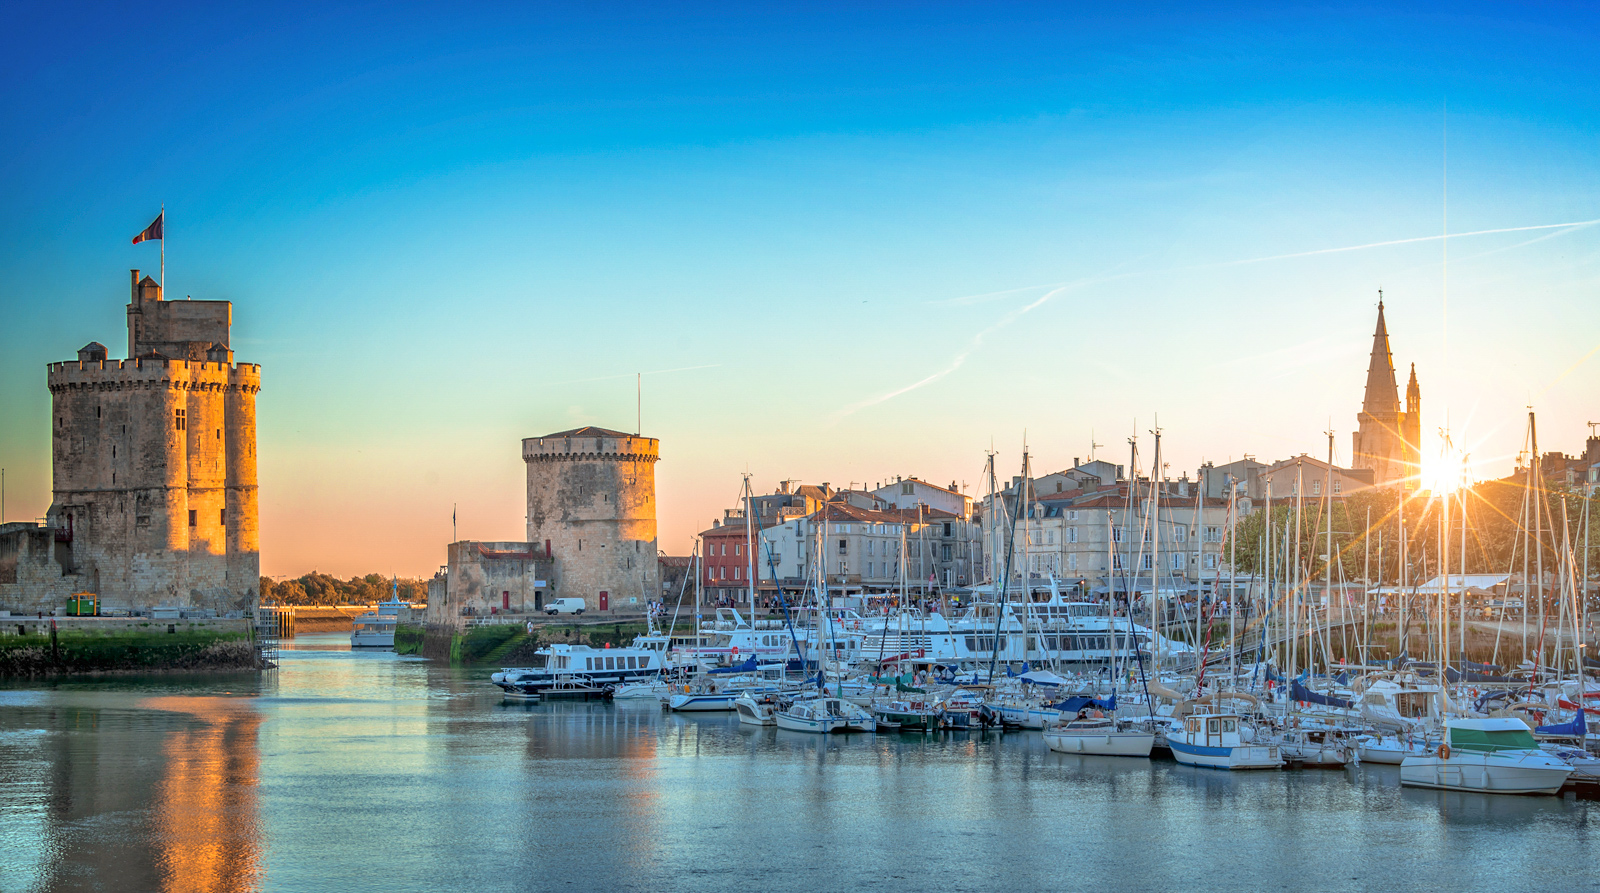 Blog - Crossfit La Rochelle